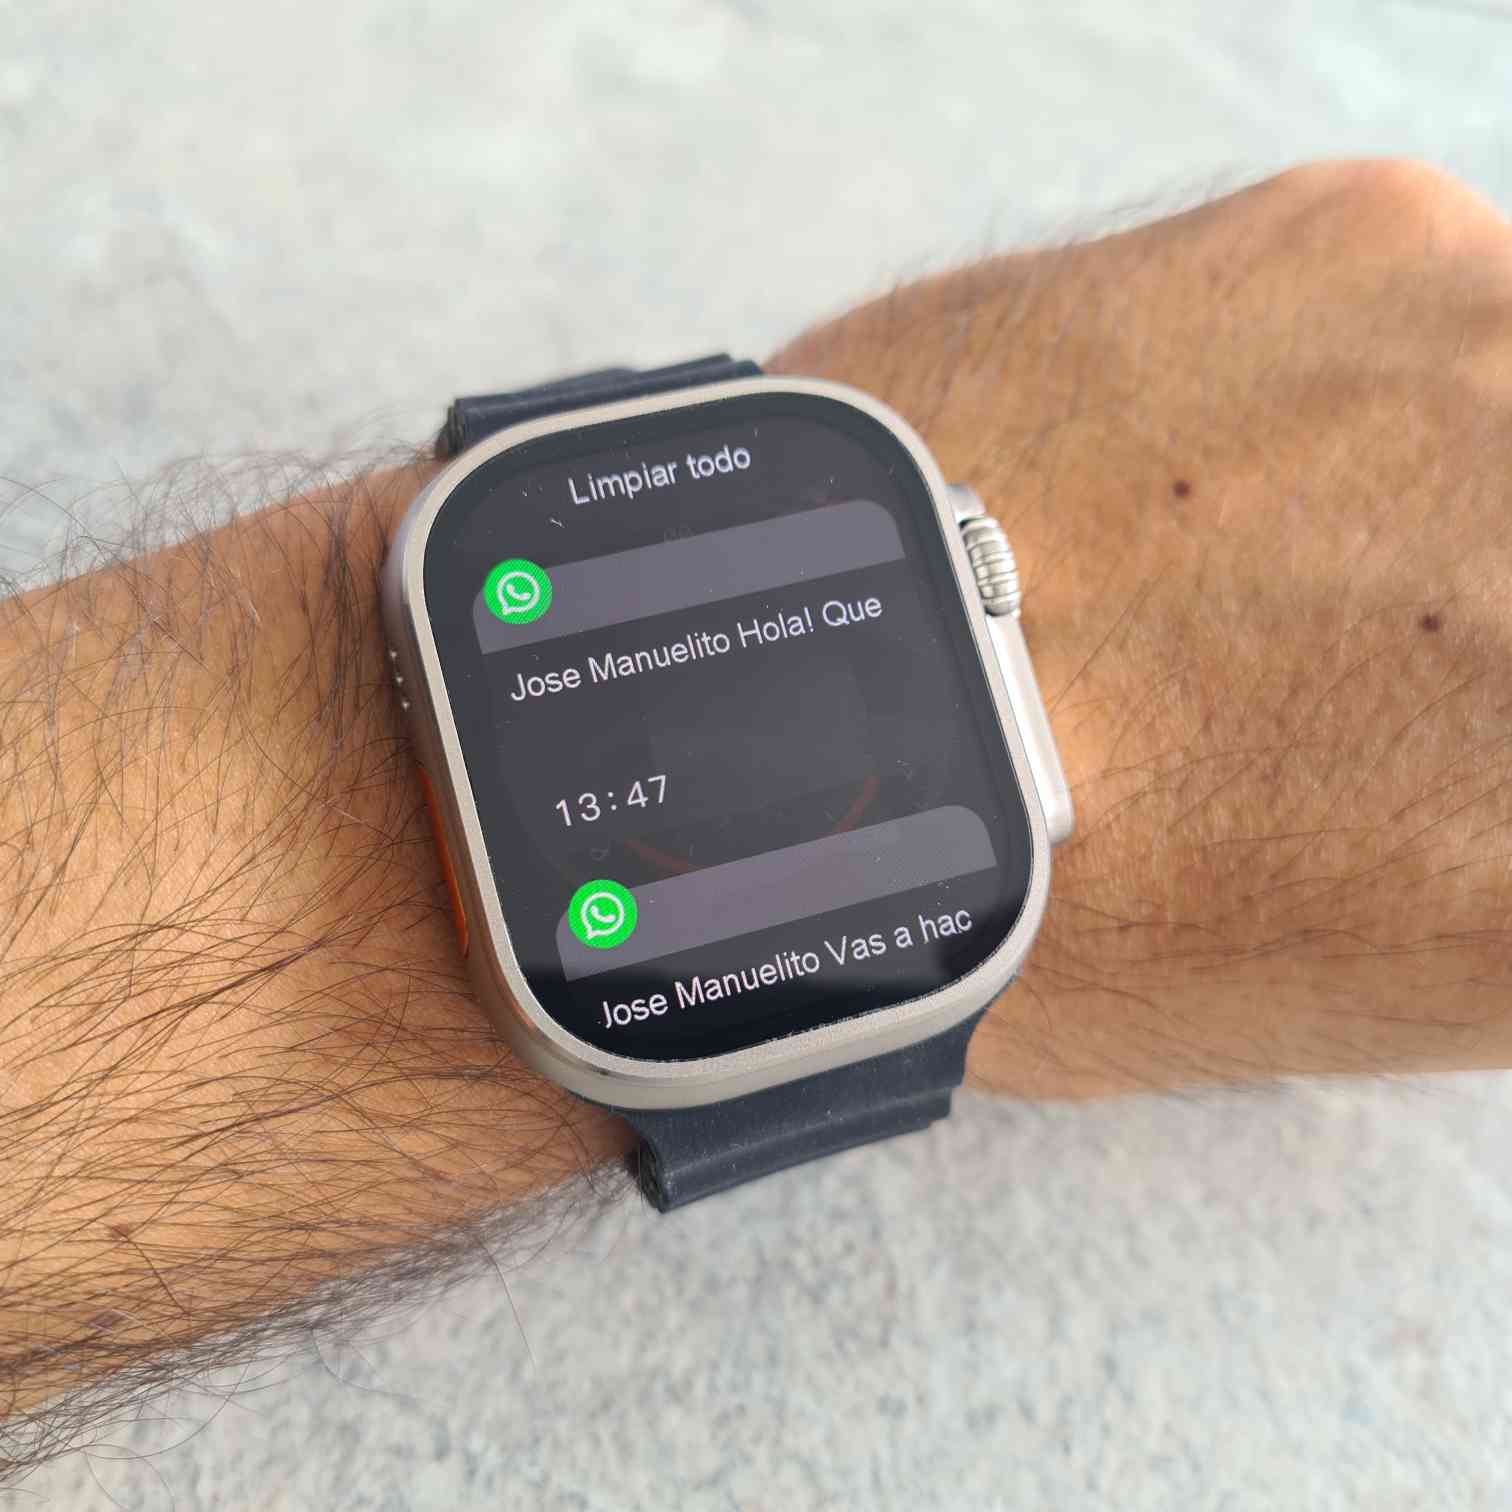 Smartwatch Hello Watch 3 Plus 4gb Plateado - Debag